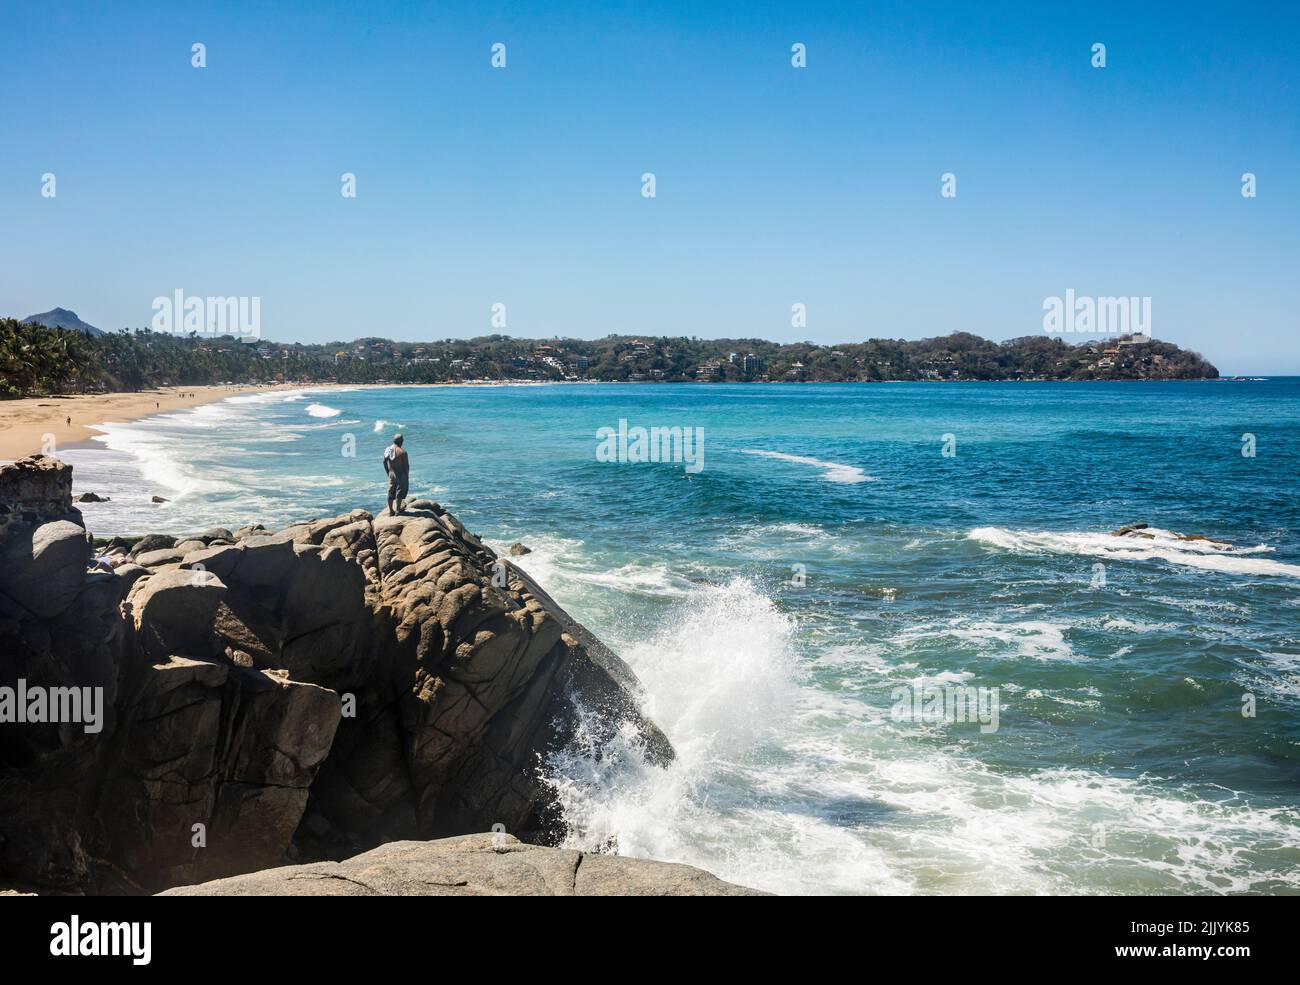 Onde che si infrangono sulle rocce all'estremità nord di Playa Sayulita con un uomo in piedi sulle rocce, Sayulita, Nayarit, Messico. Foto Stock